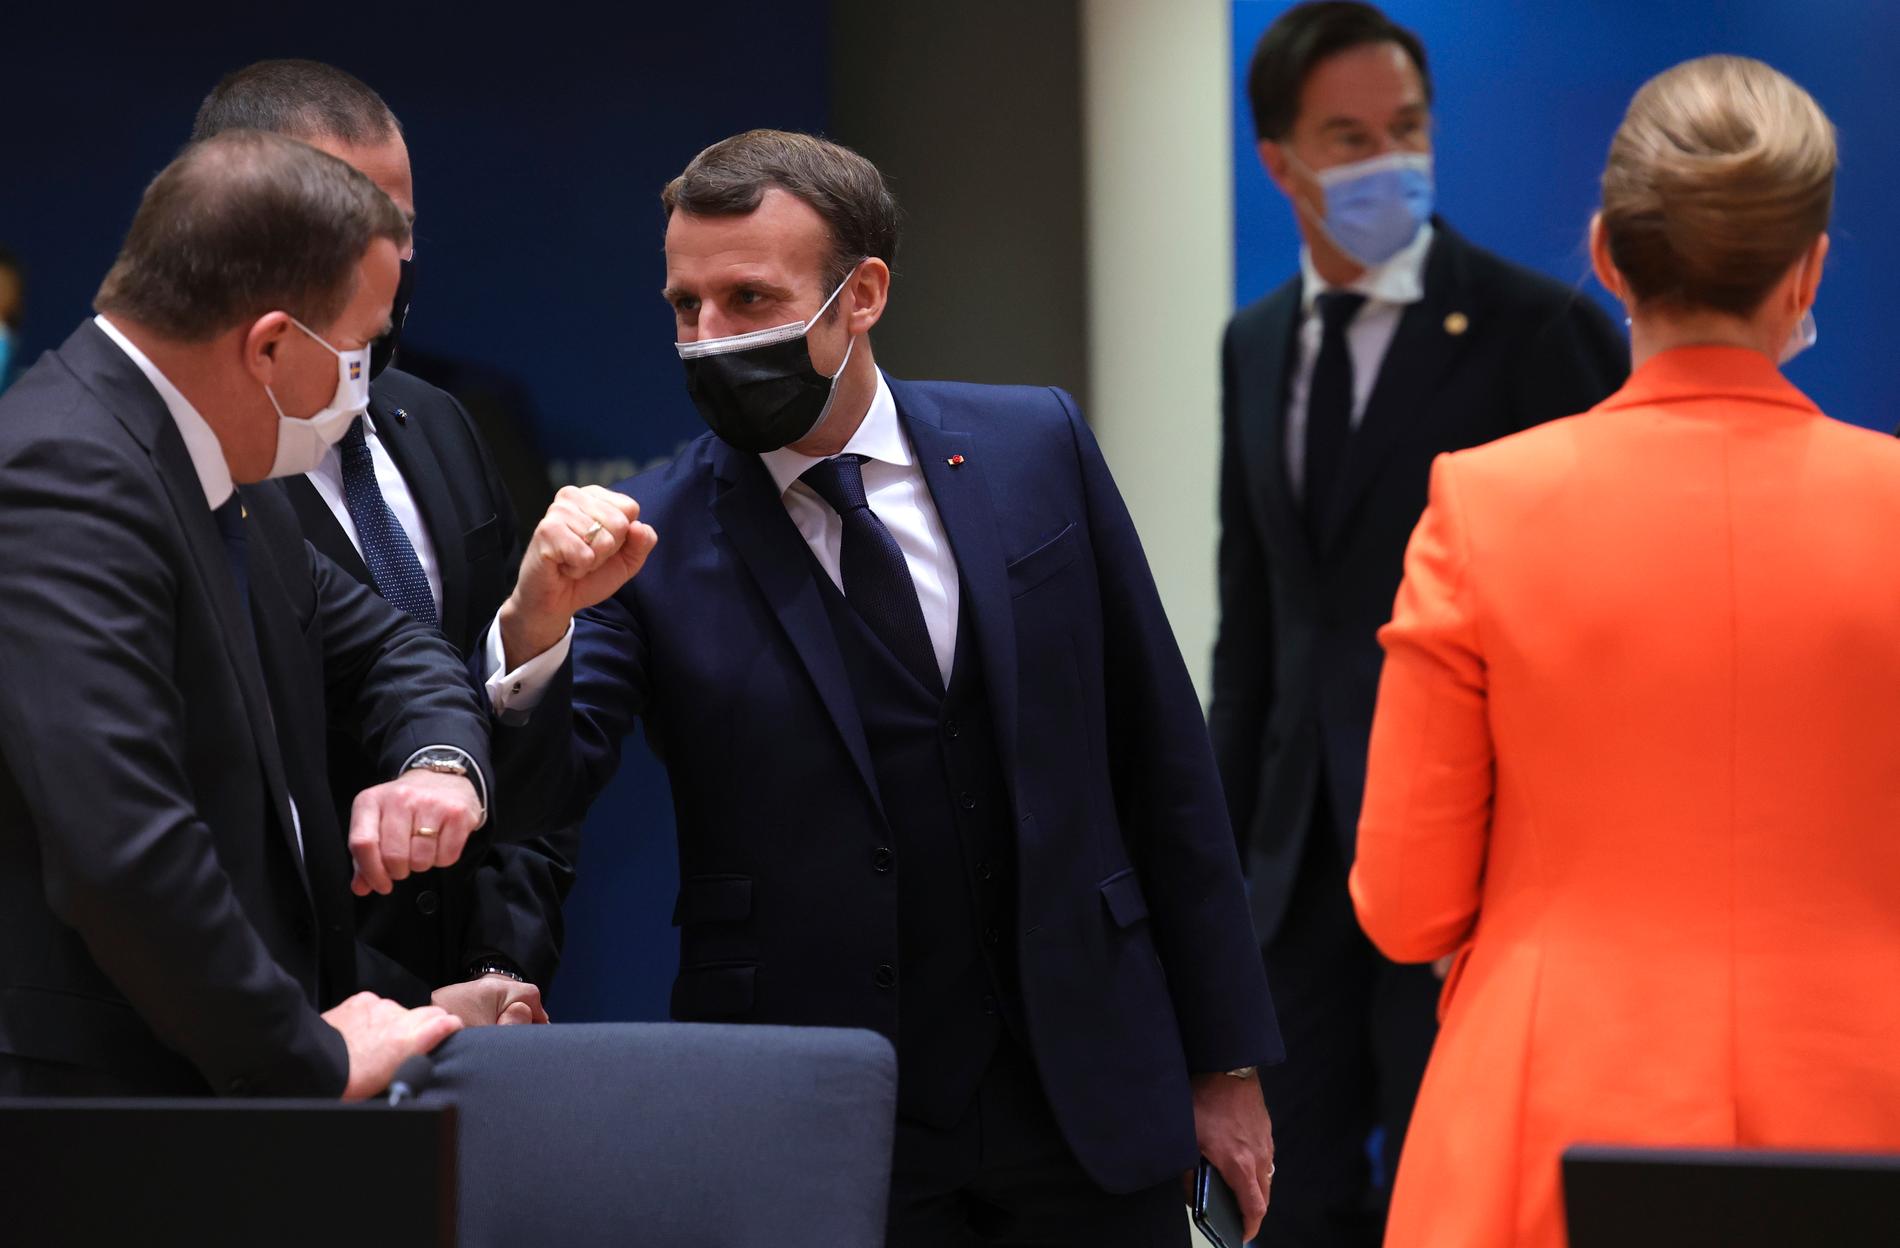 Stefan Löfven armbågshälsar på Emmanuel Macron den 10 december. En vecka senare har den franske presidenten insjuknat i covid-19 och en insats pågår för att spåra smittan.